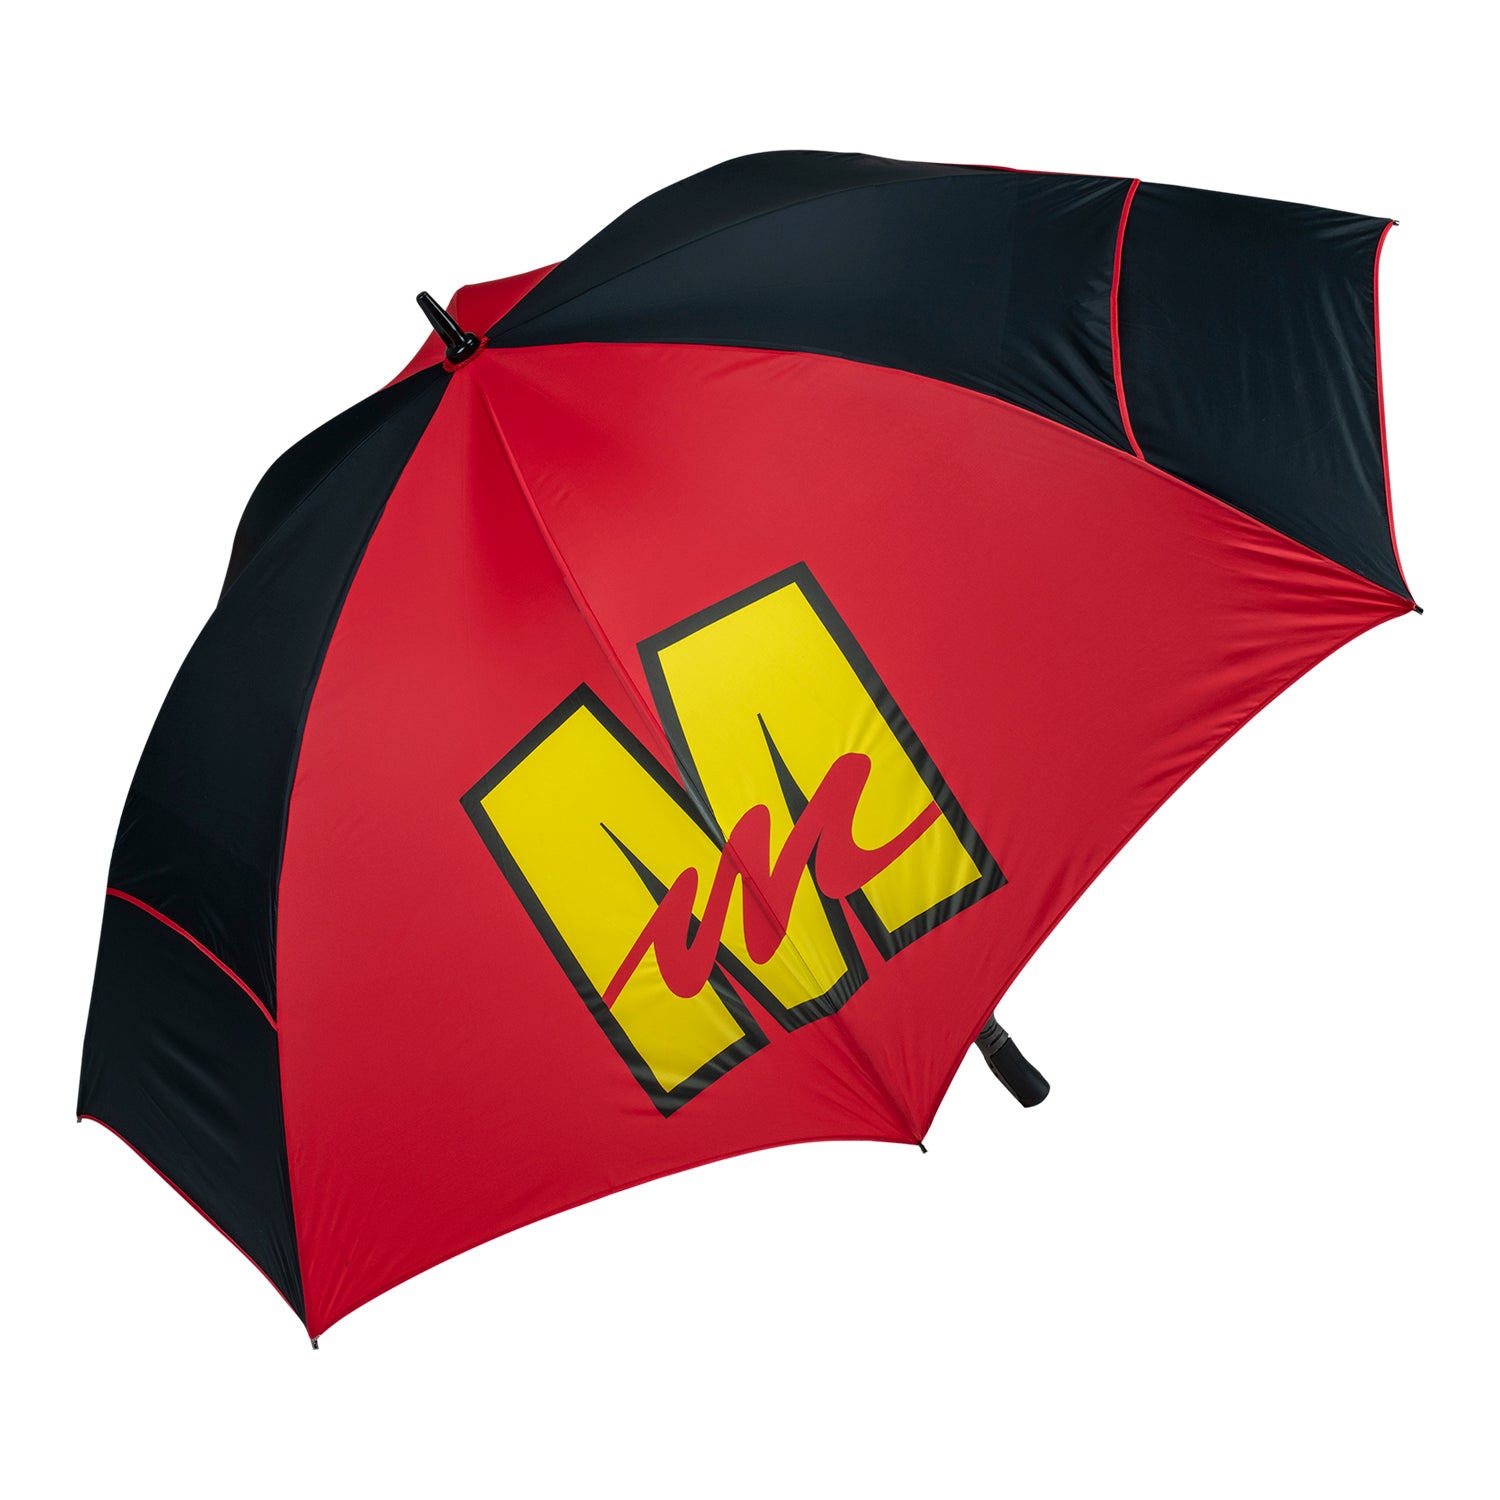 Mecum Auctions Golf Umbrella - Open View